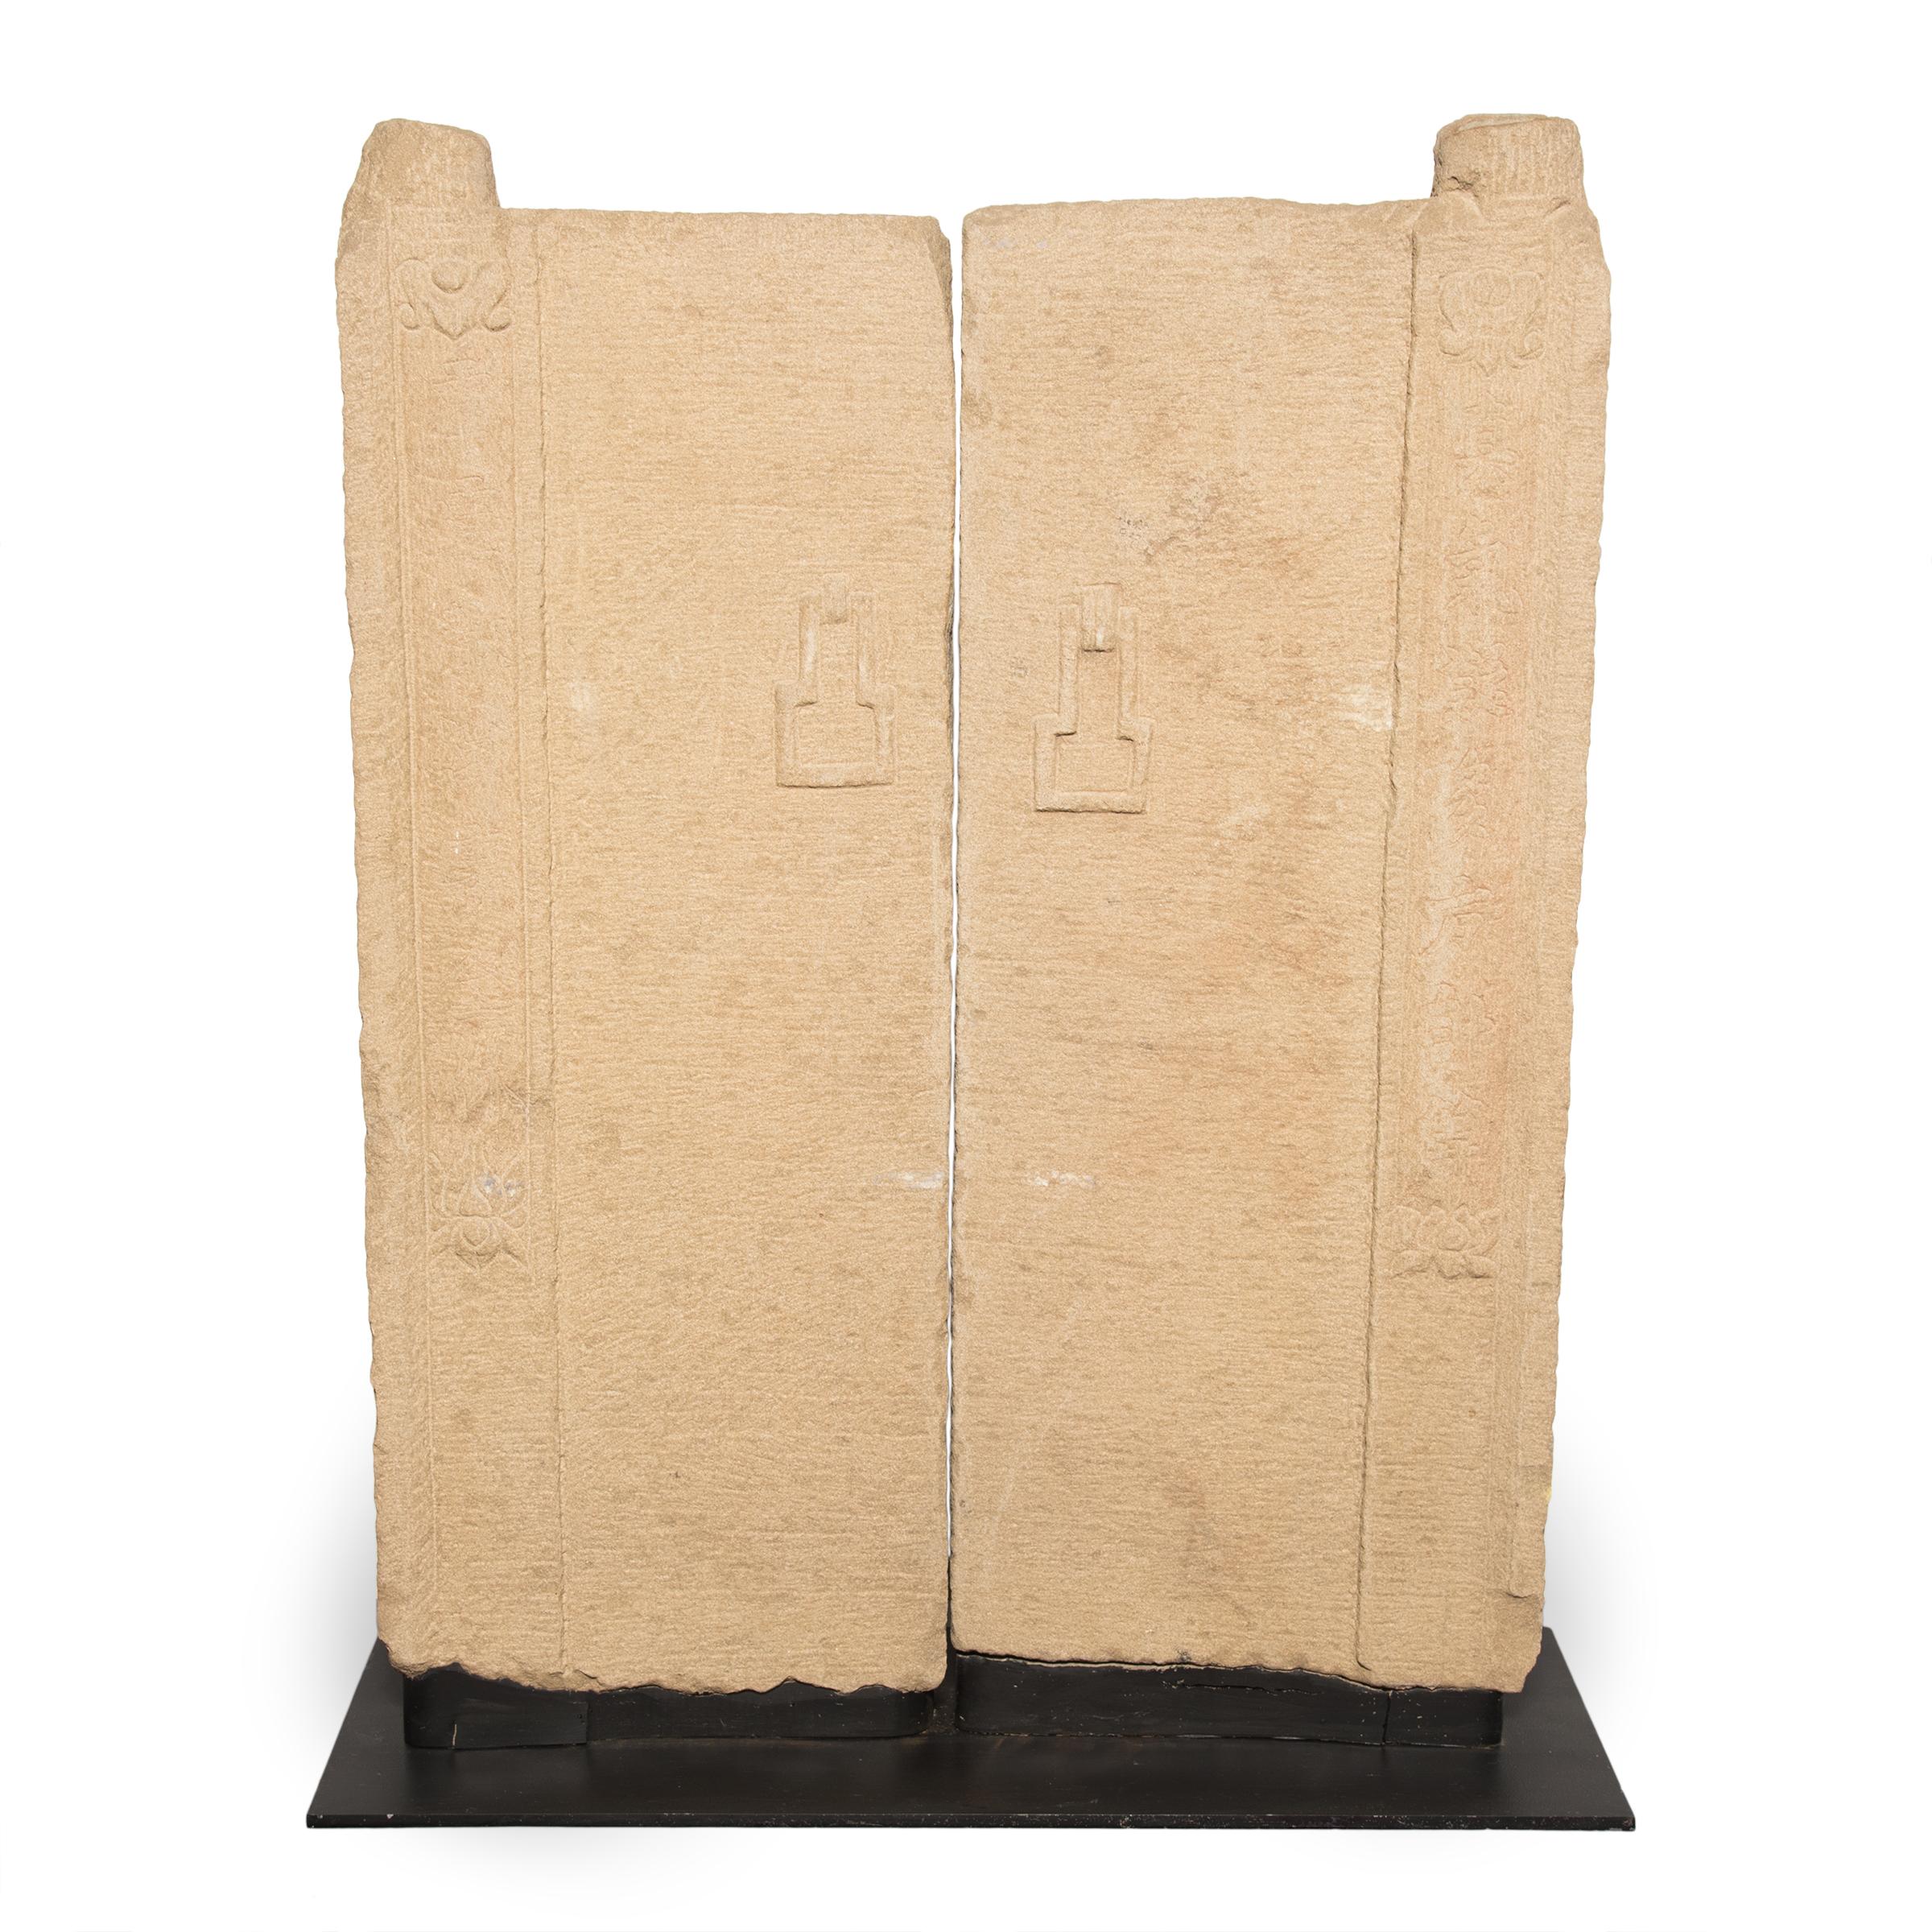 Ming Pair of Chinese Taoist Stone Doors, c. 1400